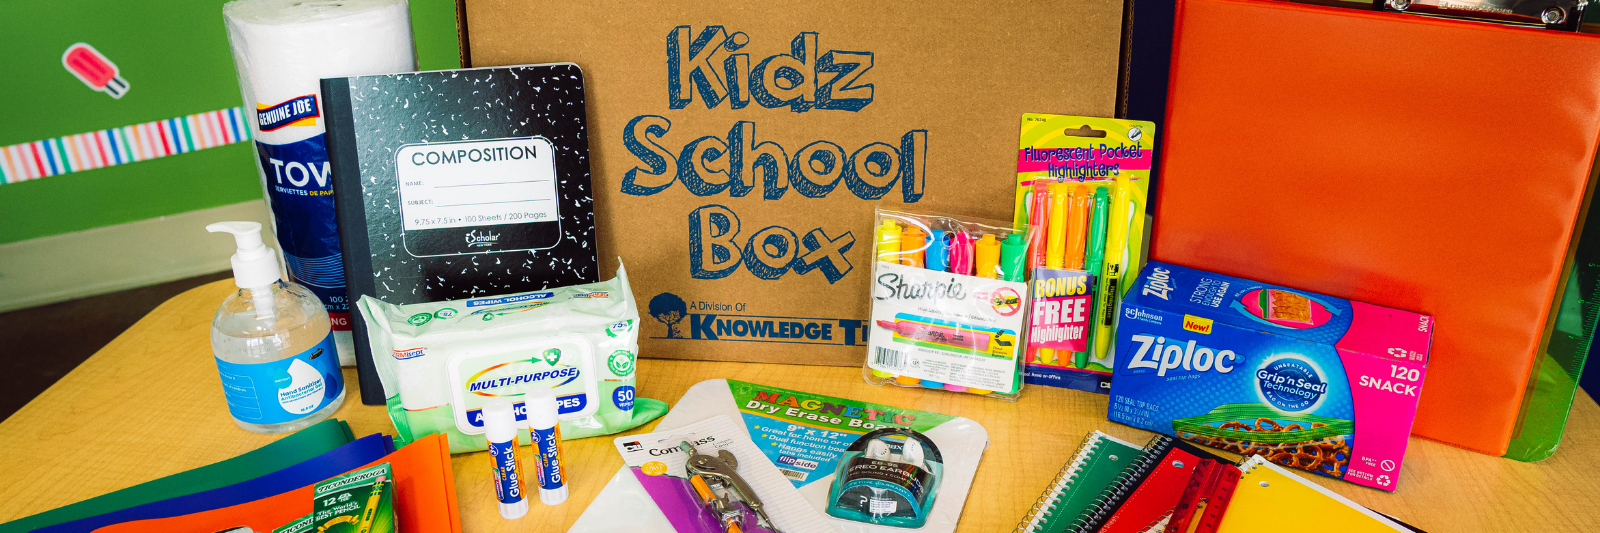 Kidz School Box